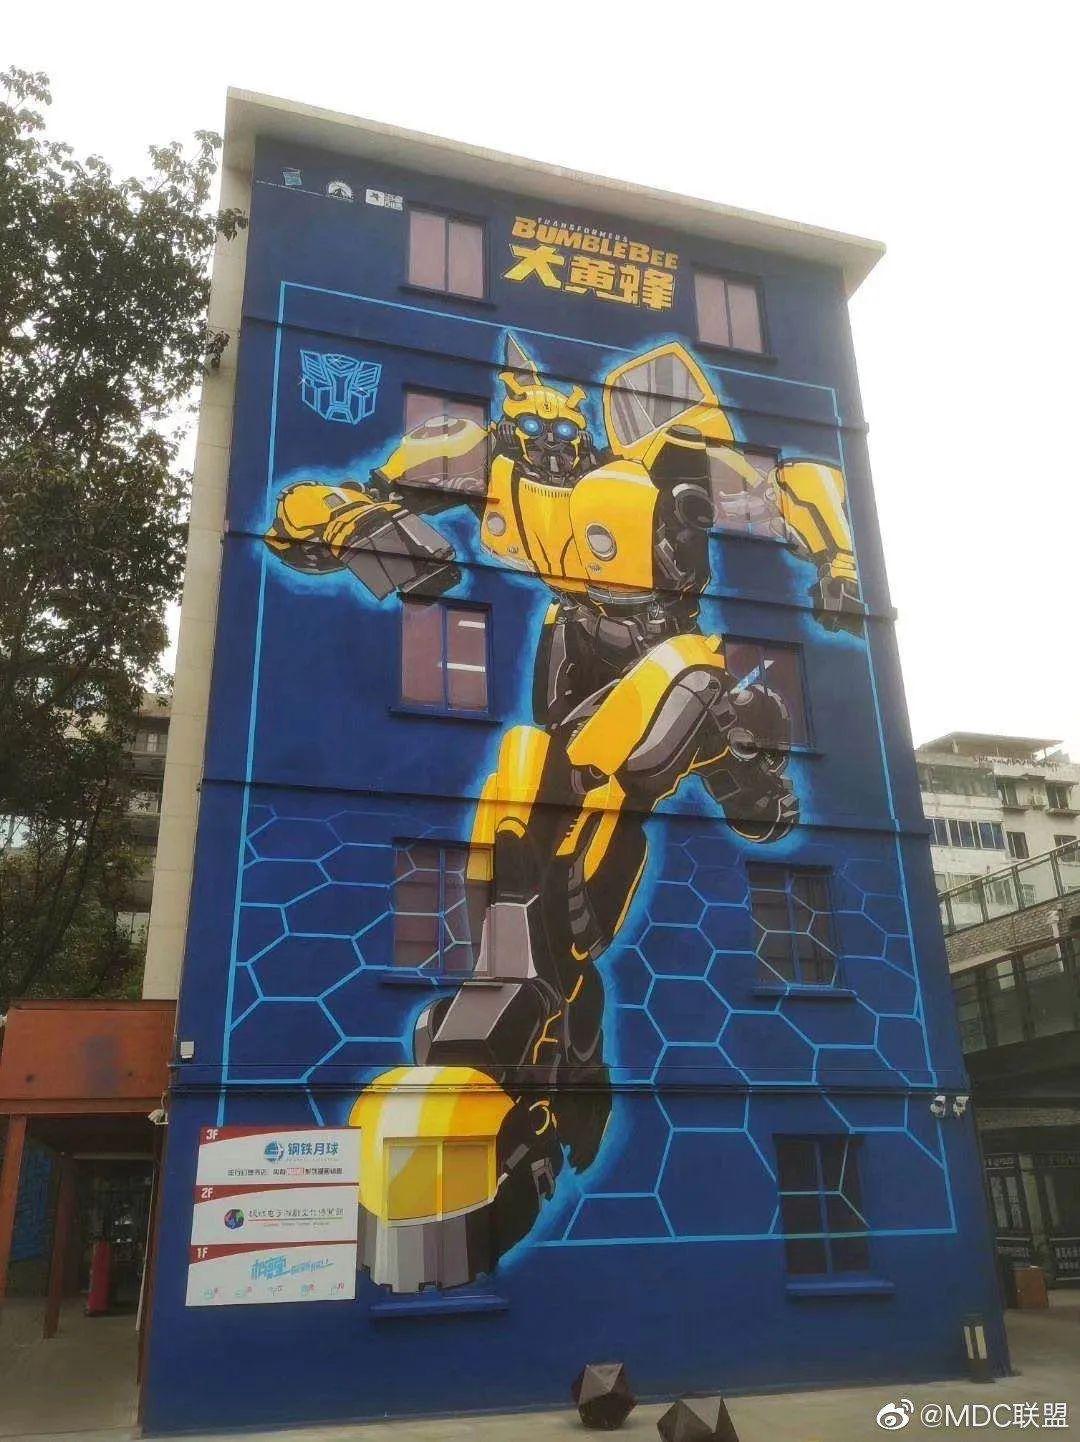 书店正式开业最先呈现的墙绘是钢铁侠然后是变形金刚的大黄蜂一个